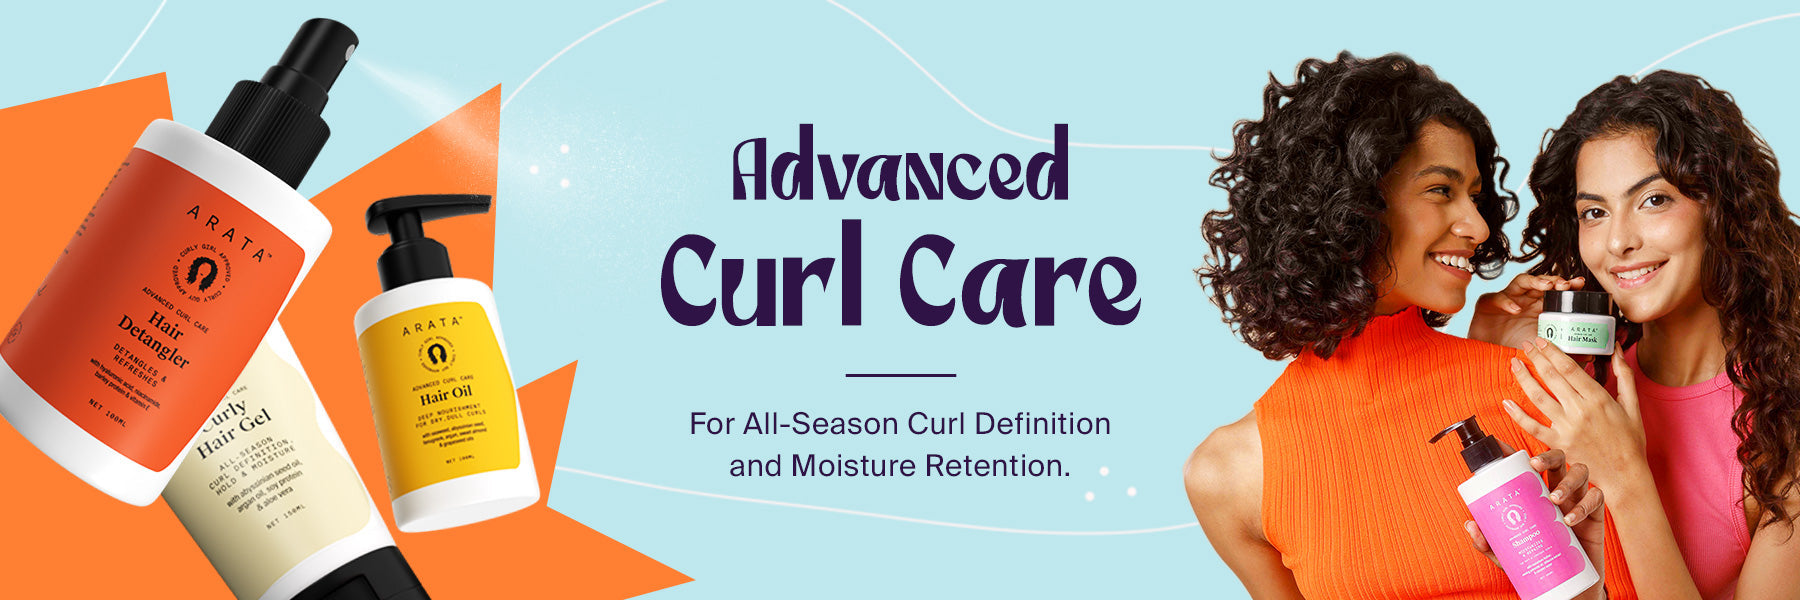 Advanced Curl Care